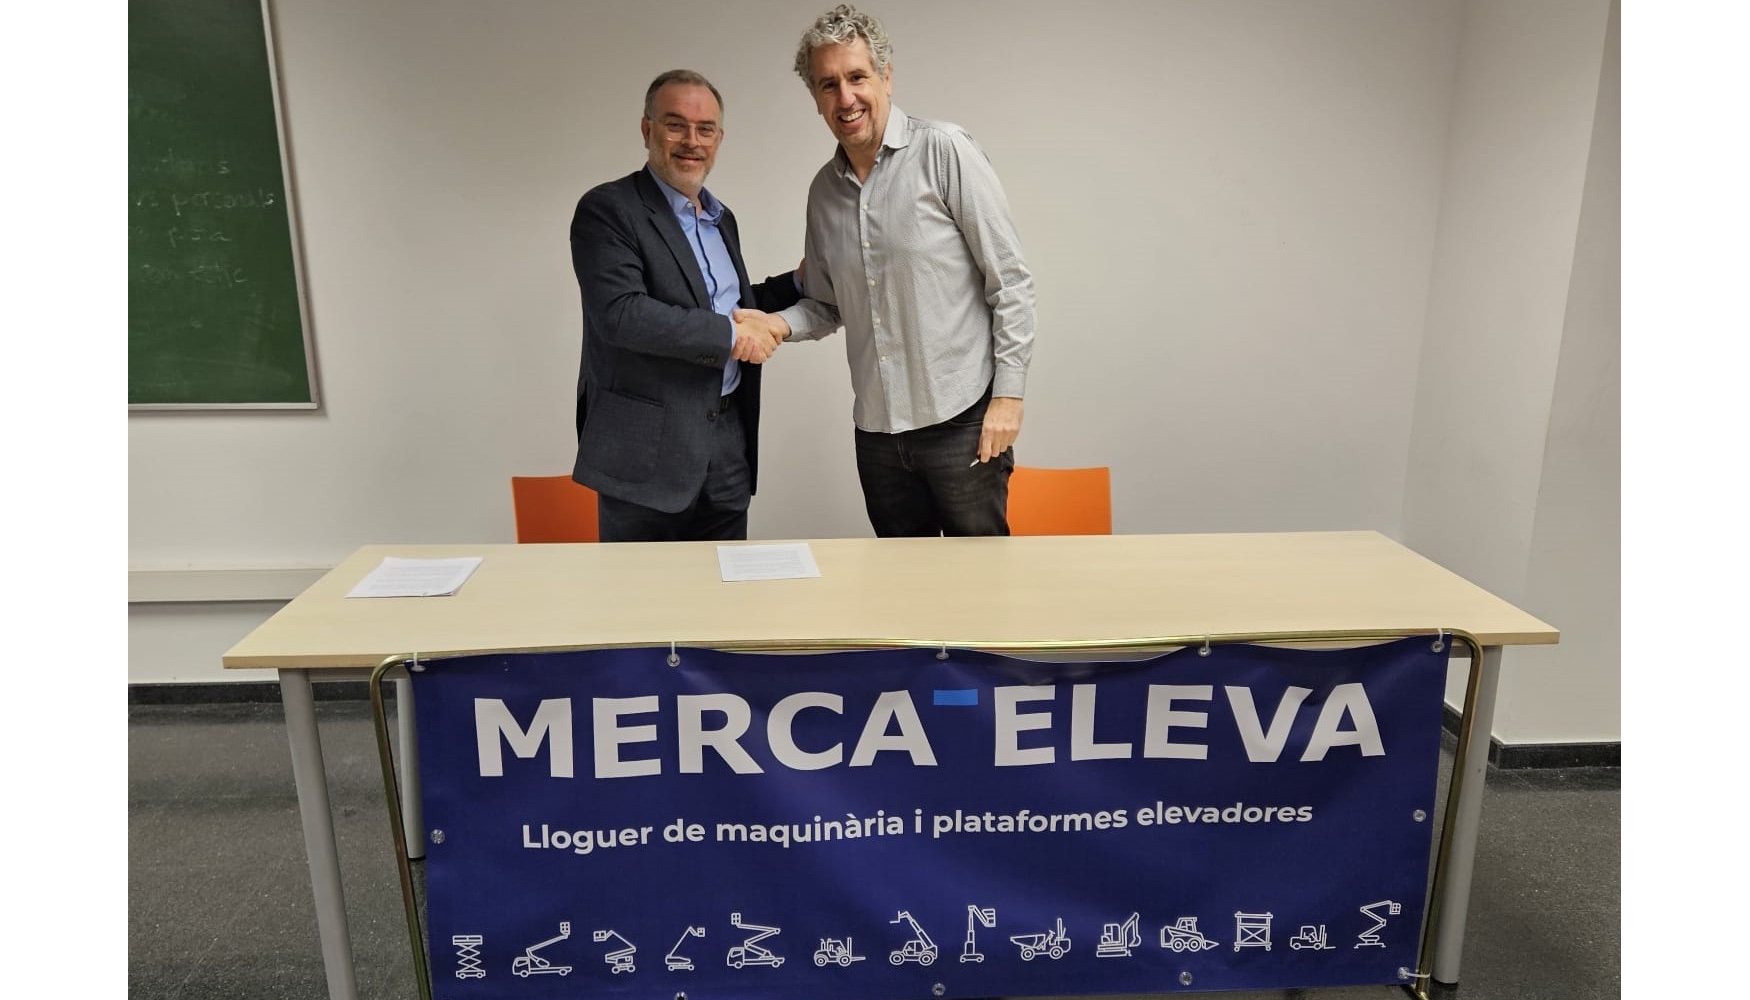 De izquierda a derecha: Jordi Varela, CEO de Merca-Eleva, y Eduard Pallars, vicepresidente del C.B. Vic